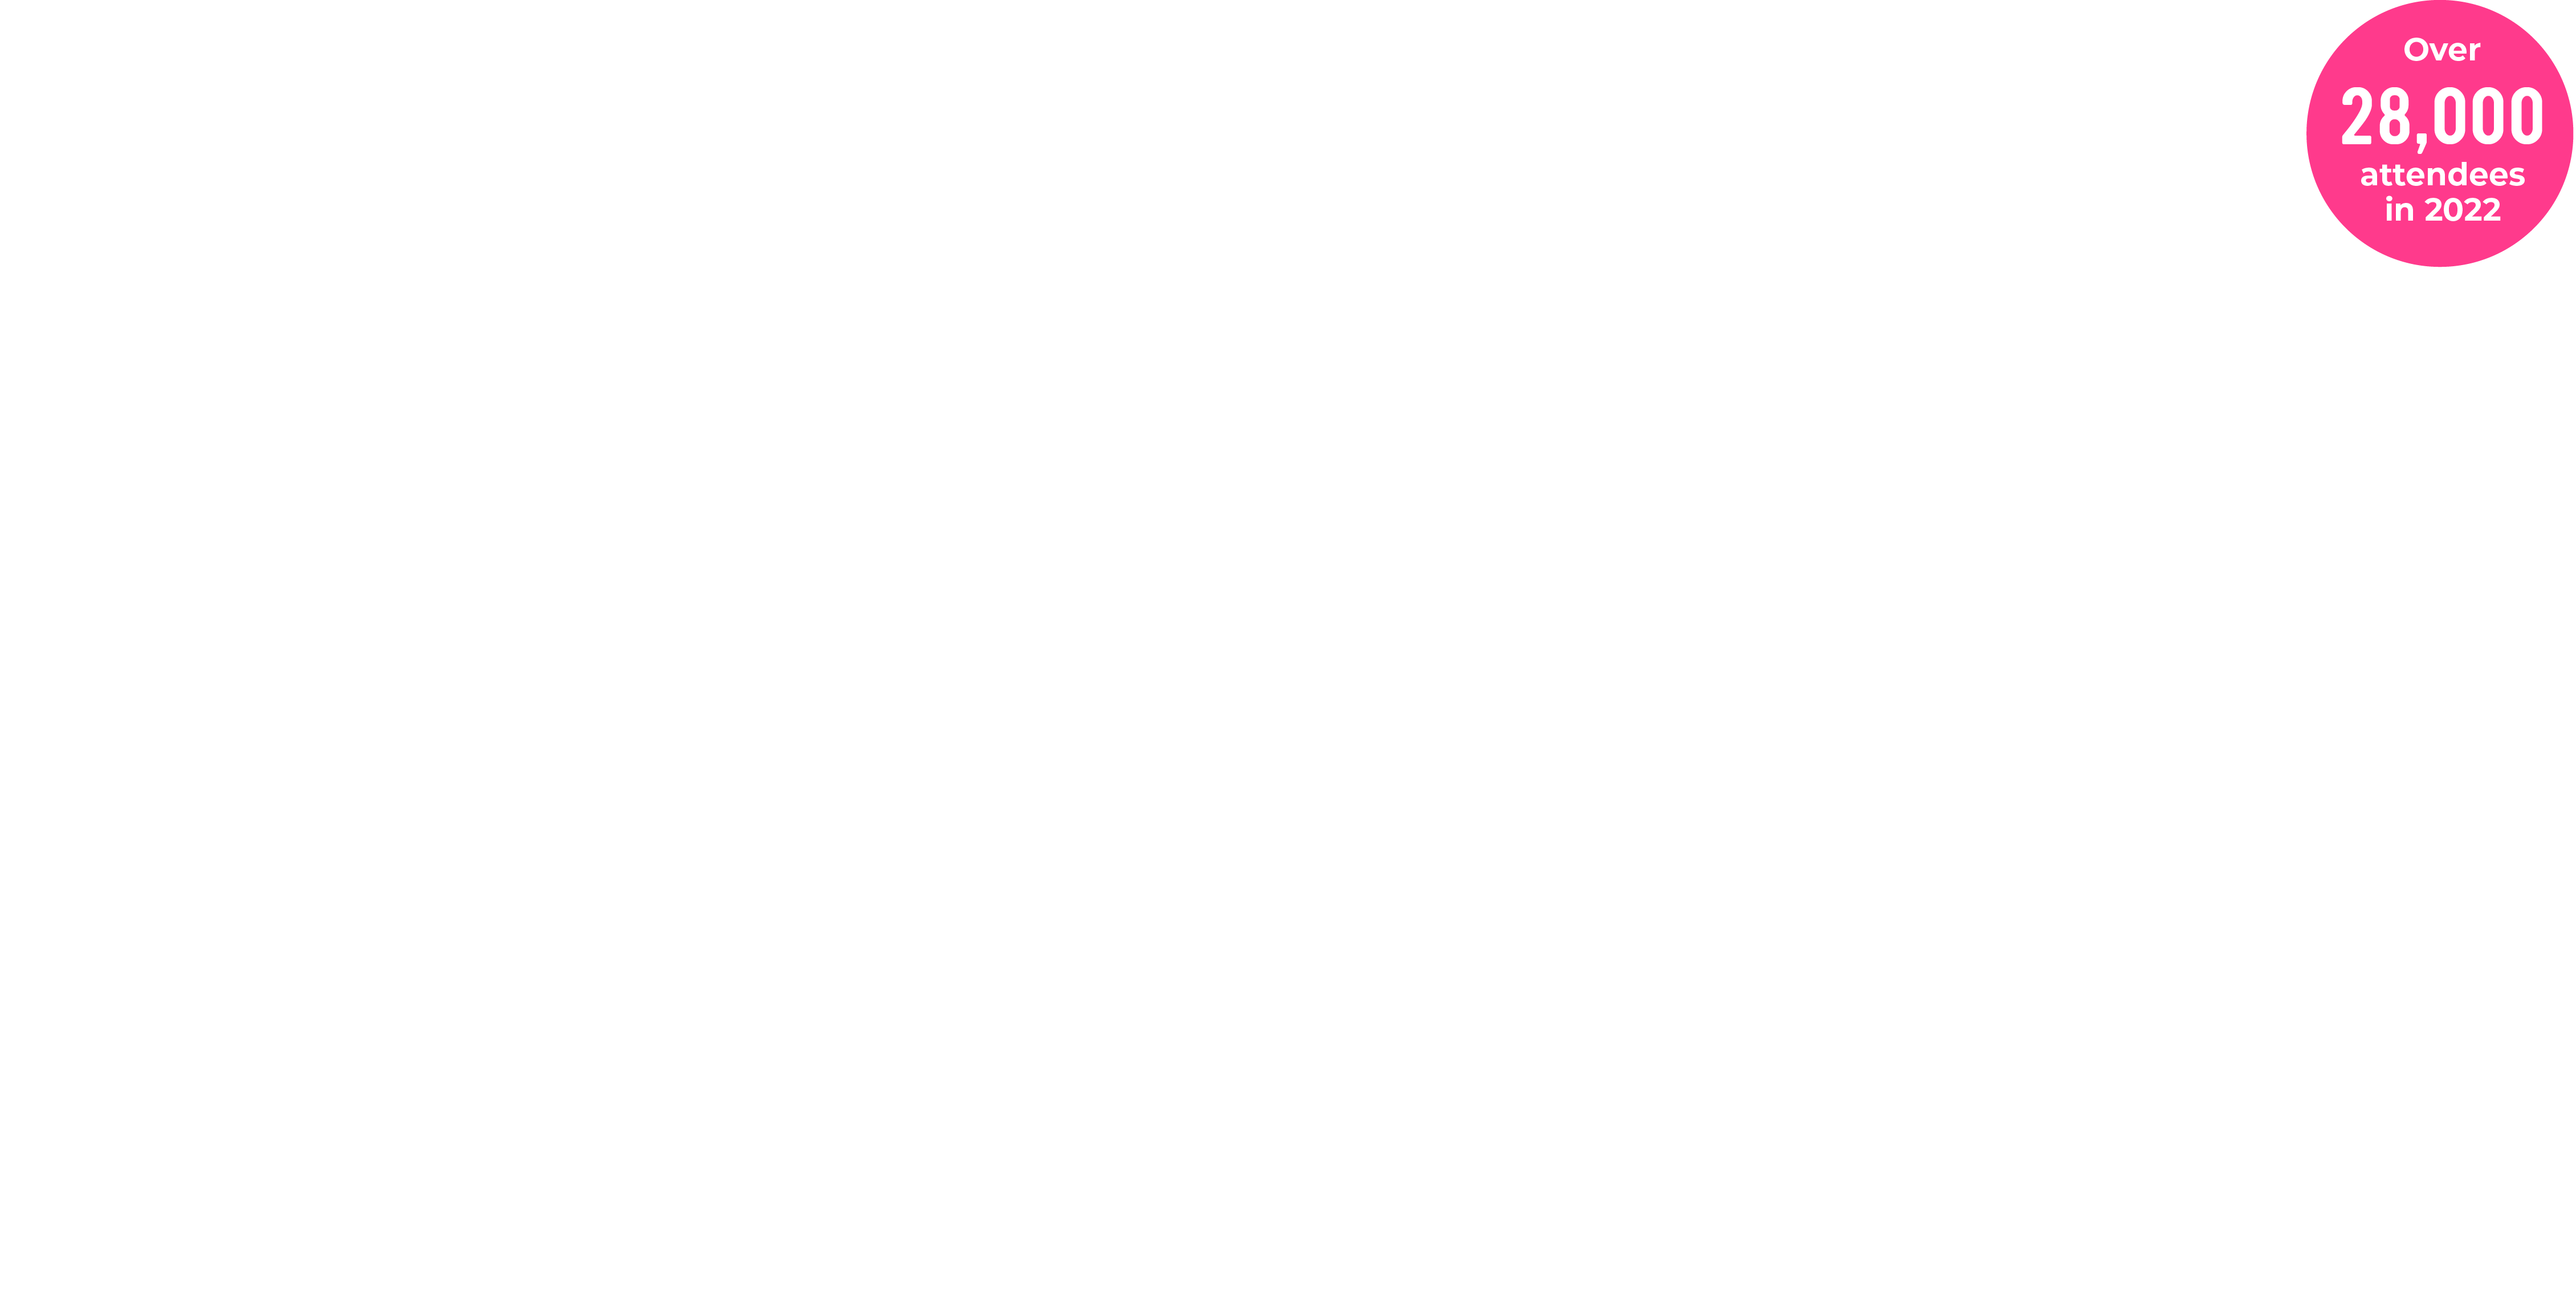 attendance graph